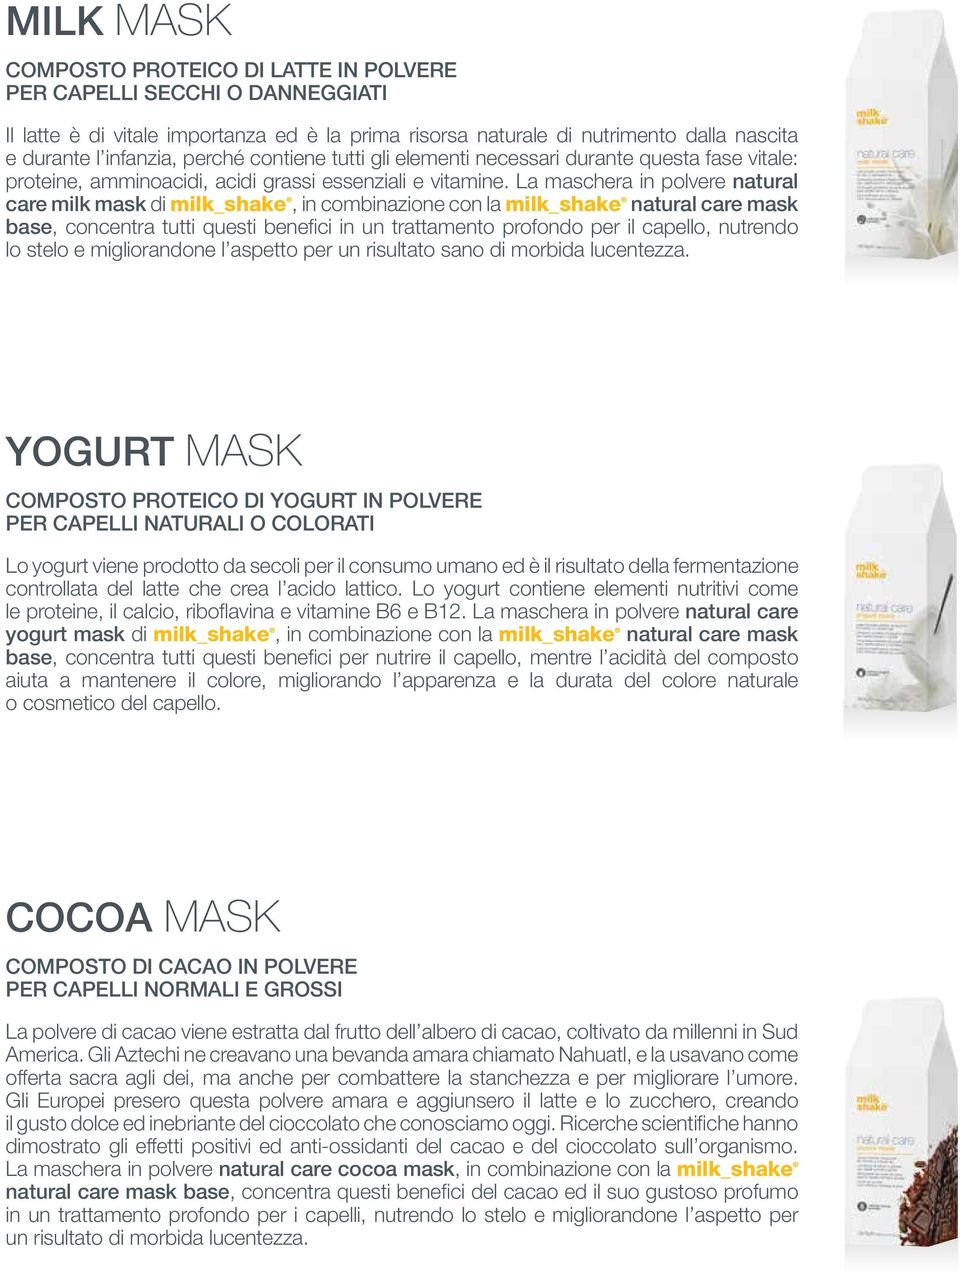 La maschera in polvere natural care milk mask di milk_shake, in combinazione con la milk_shake natural care mask base, concentra tutti questi benefici in un trattamento profondo per il capello,